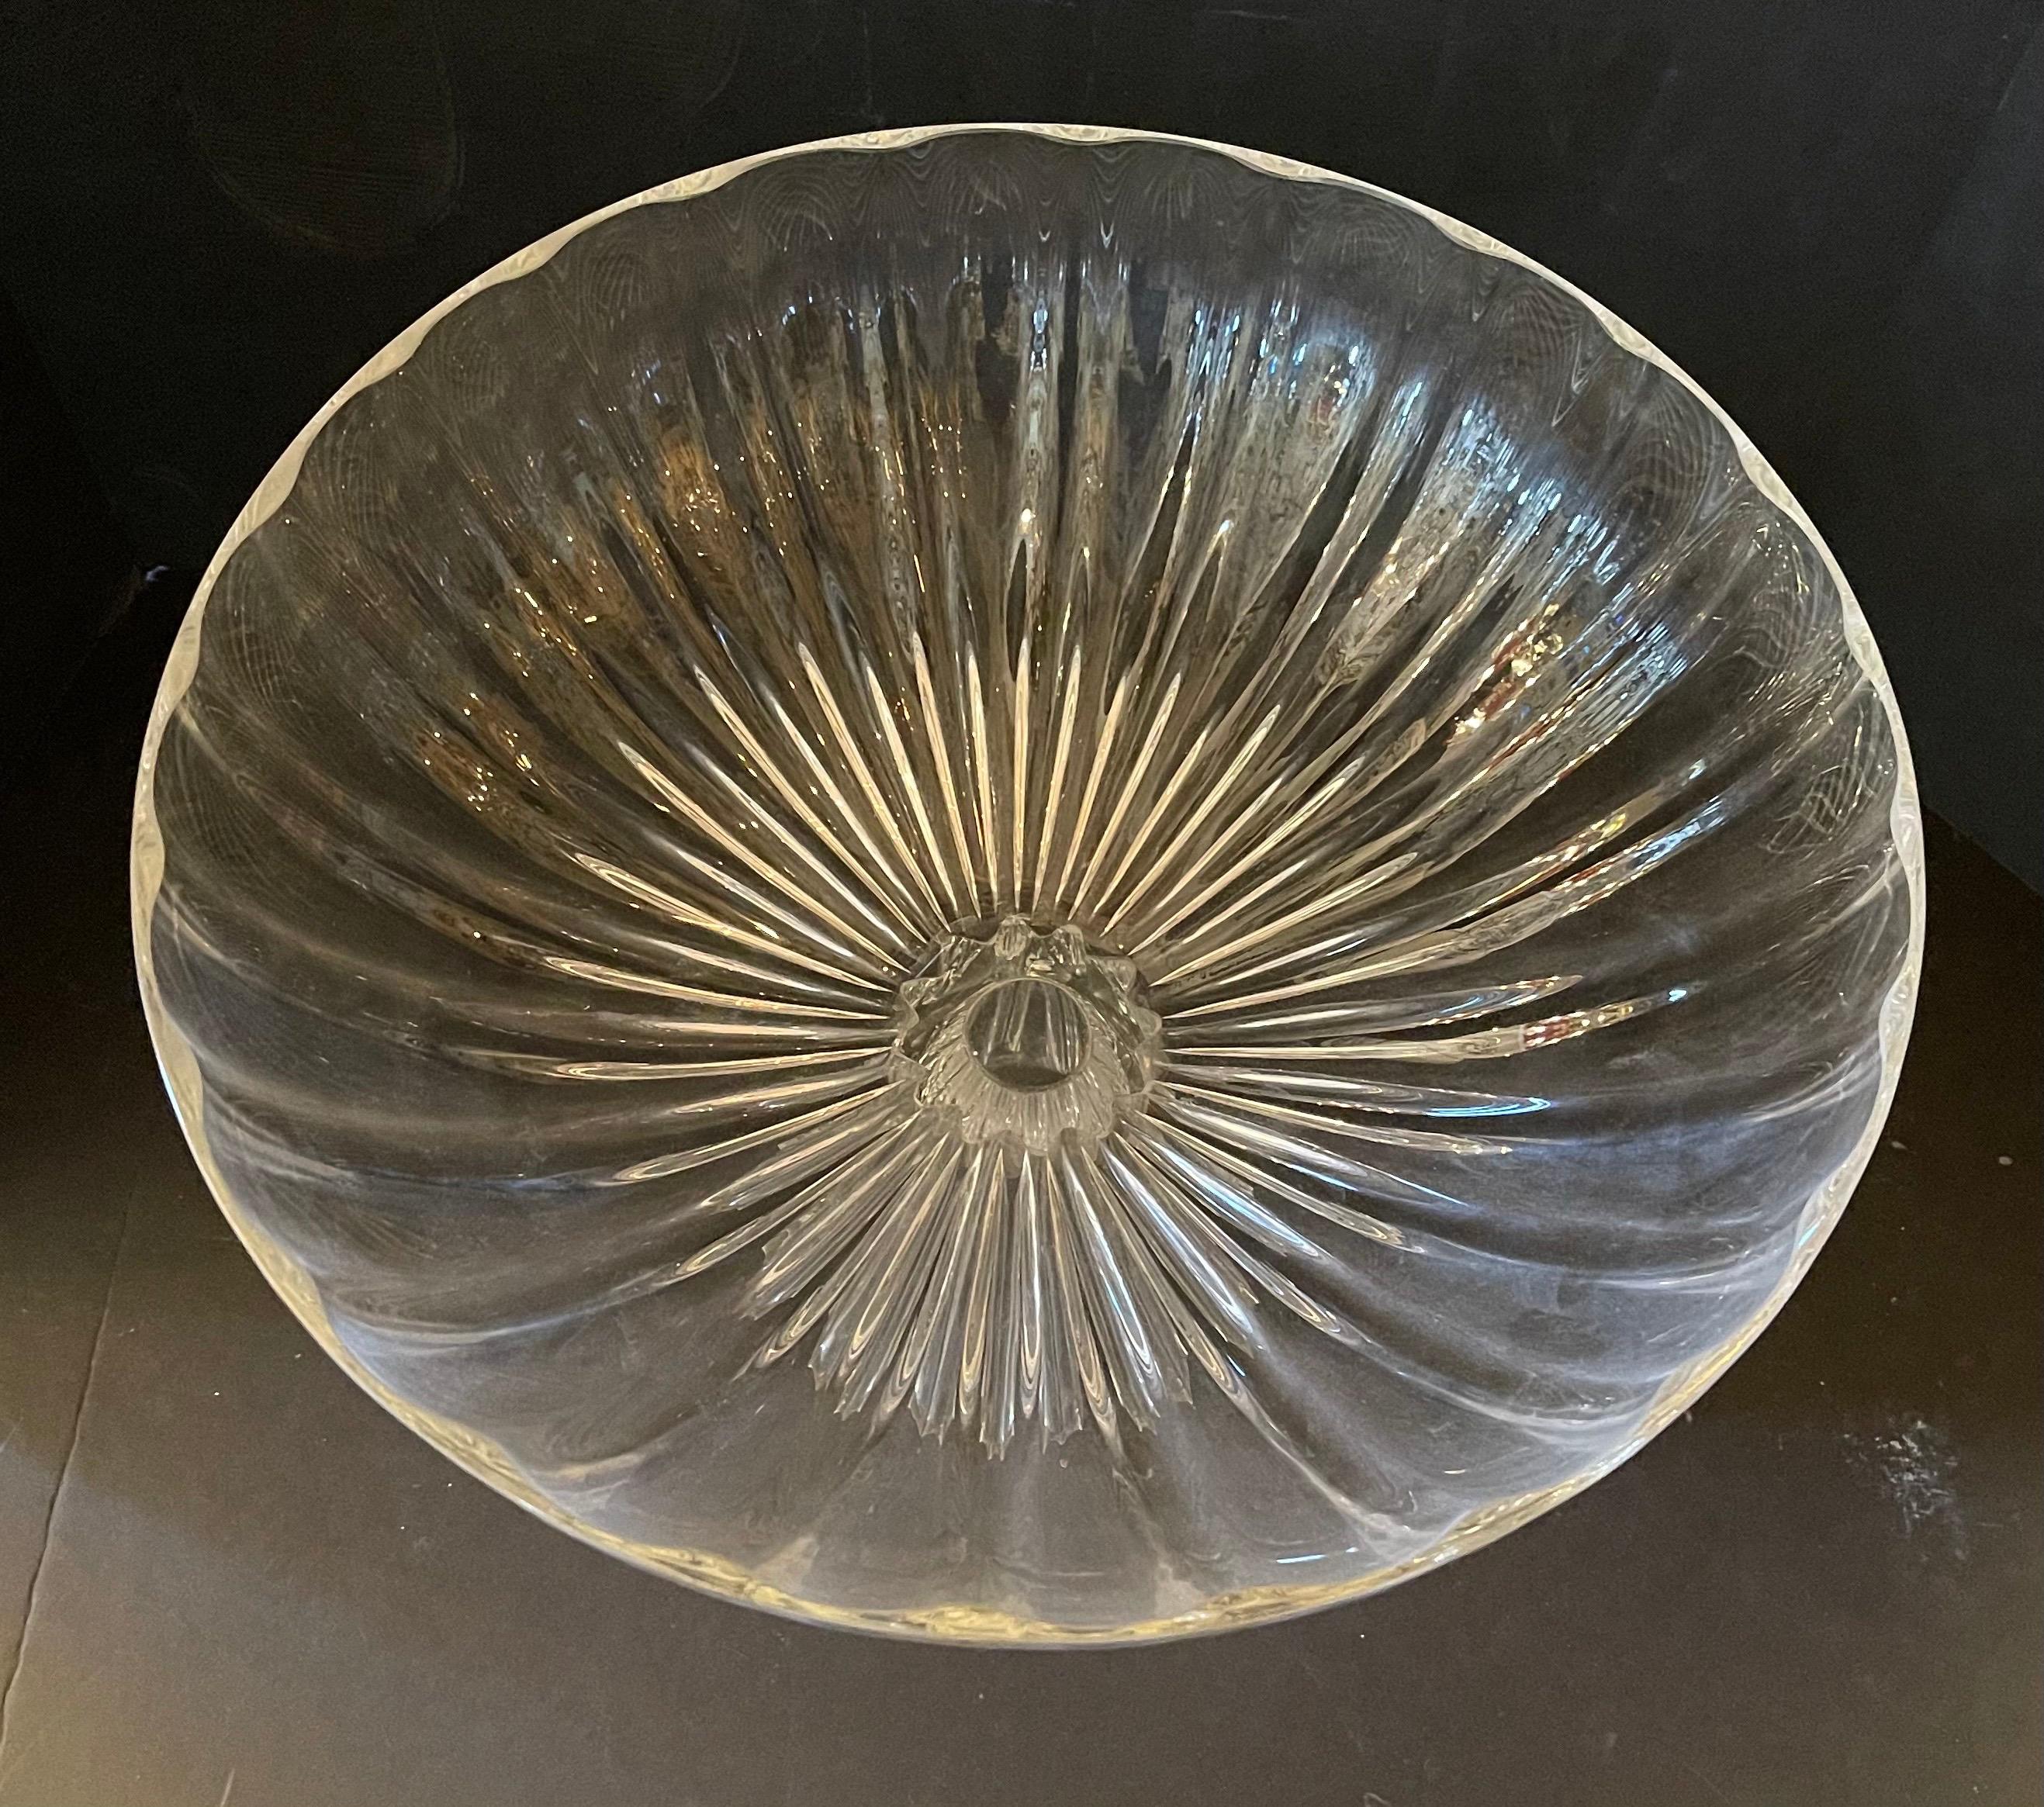 Wunderschöne Lorin Marsh Rigadin Schale klar Murano mundgeblasenes Kunstglas Mittelstück große Schale
Artikel Nr.: 4771, hergestellt in Italien
Abmessungen: 15